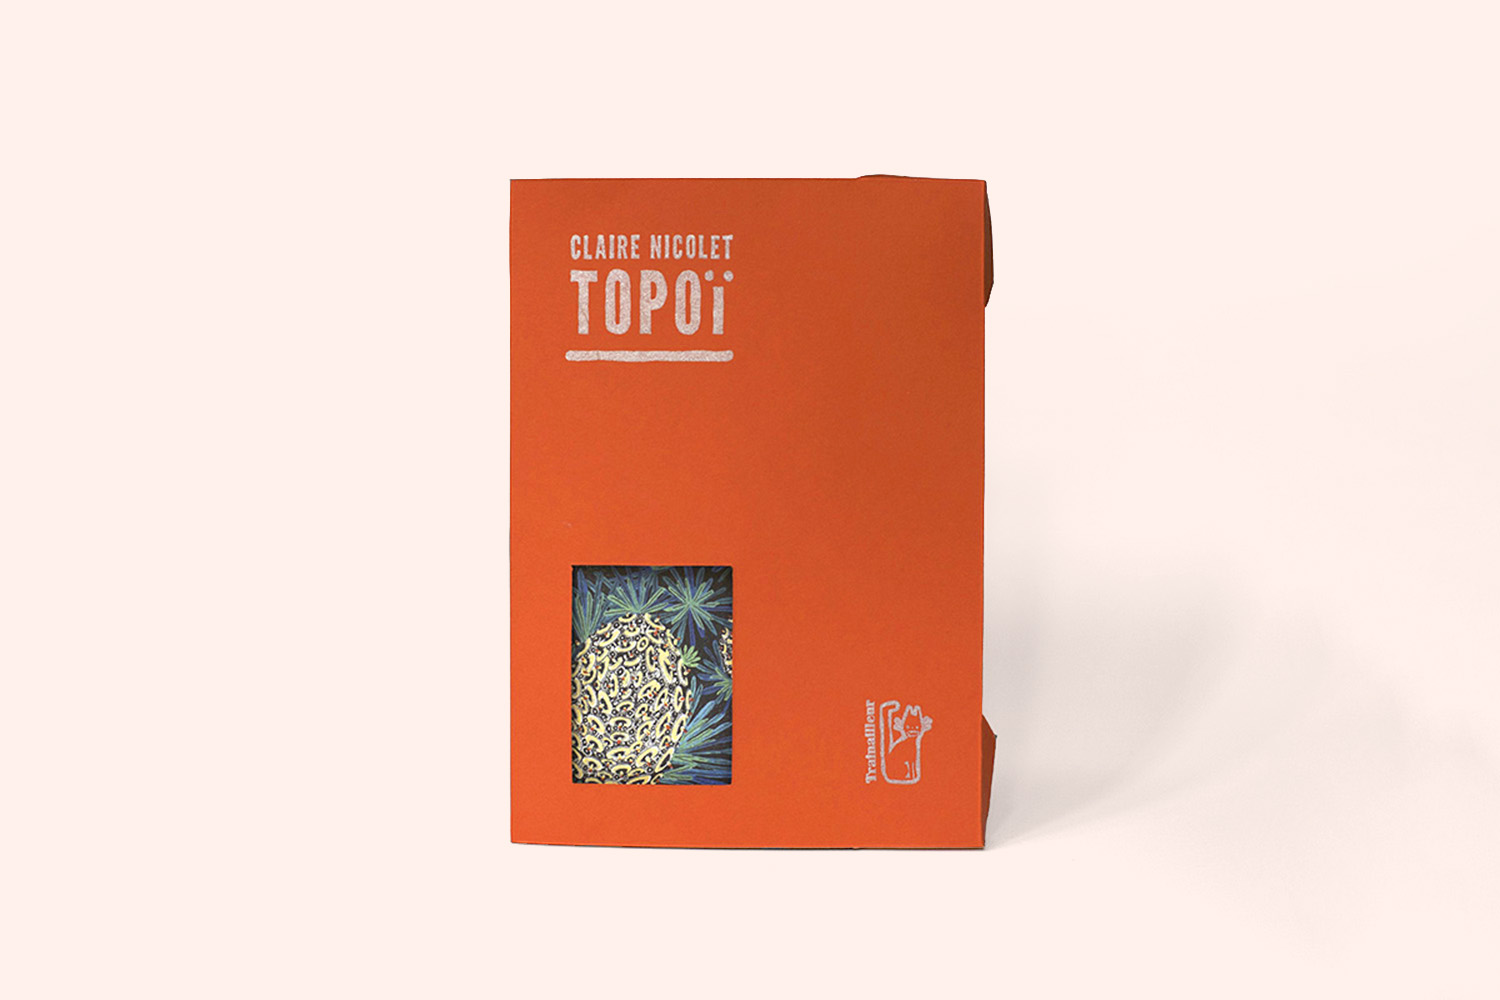 Couverture de Topoï, un livre de Claire Nicolet chez les éditions du Trainailleur